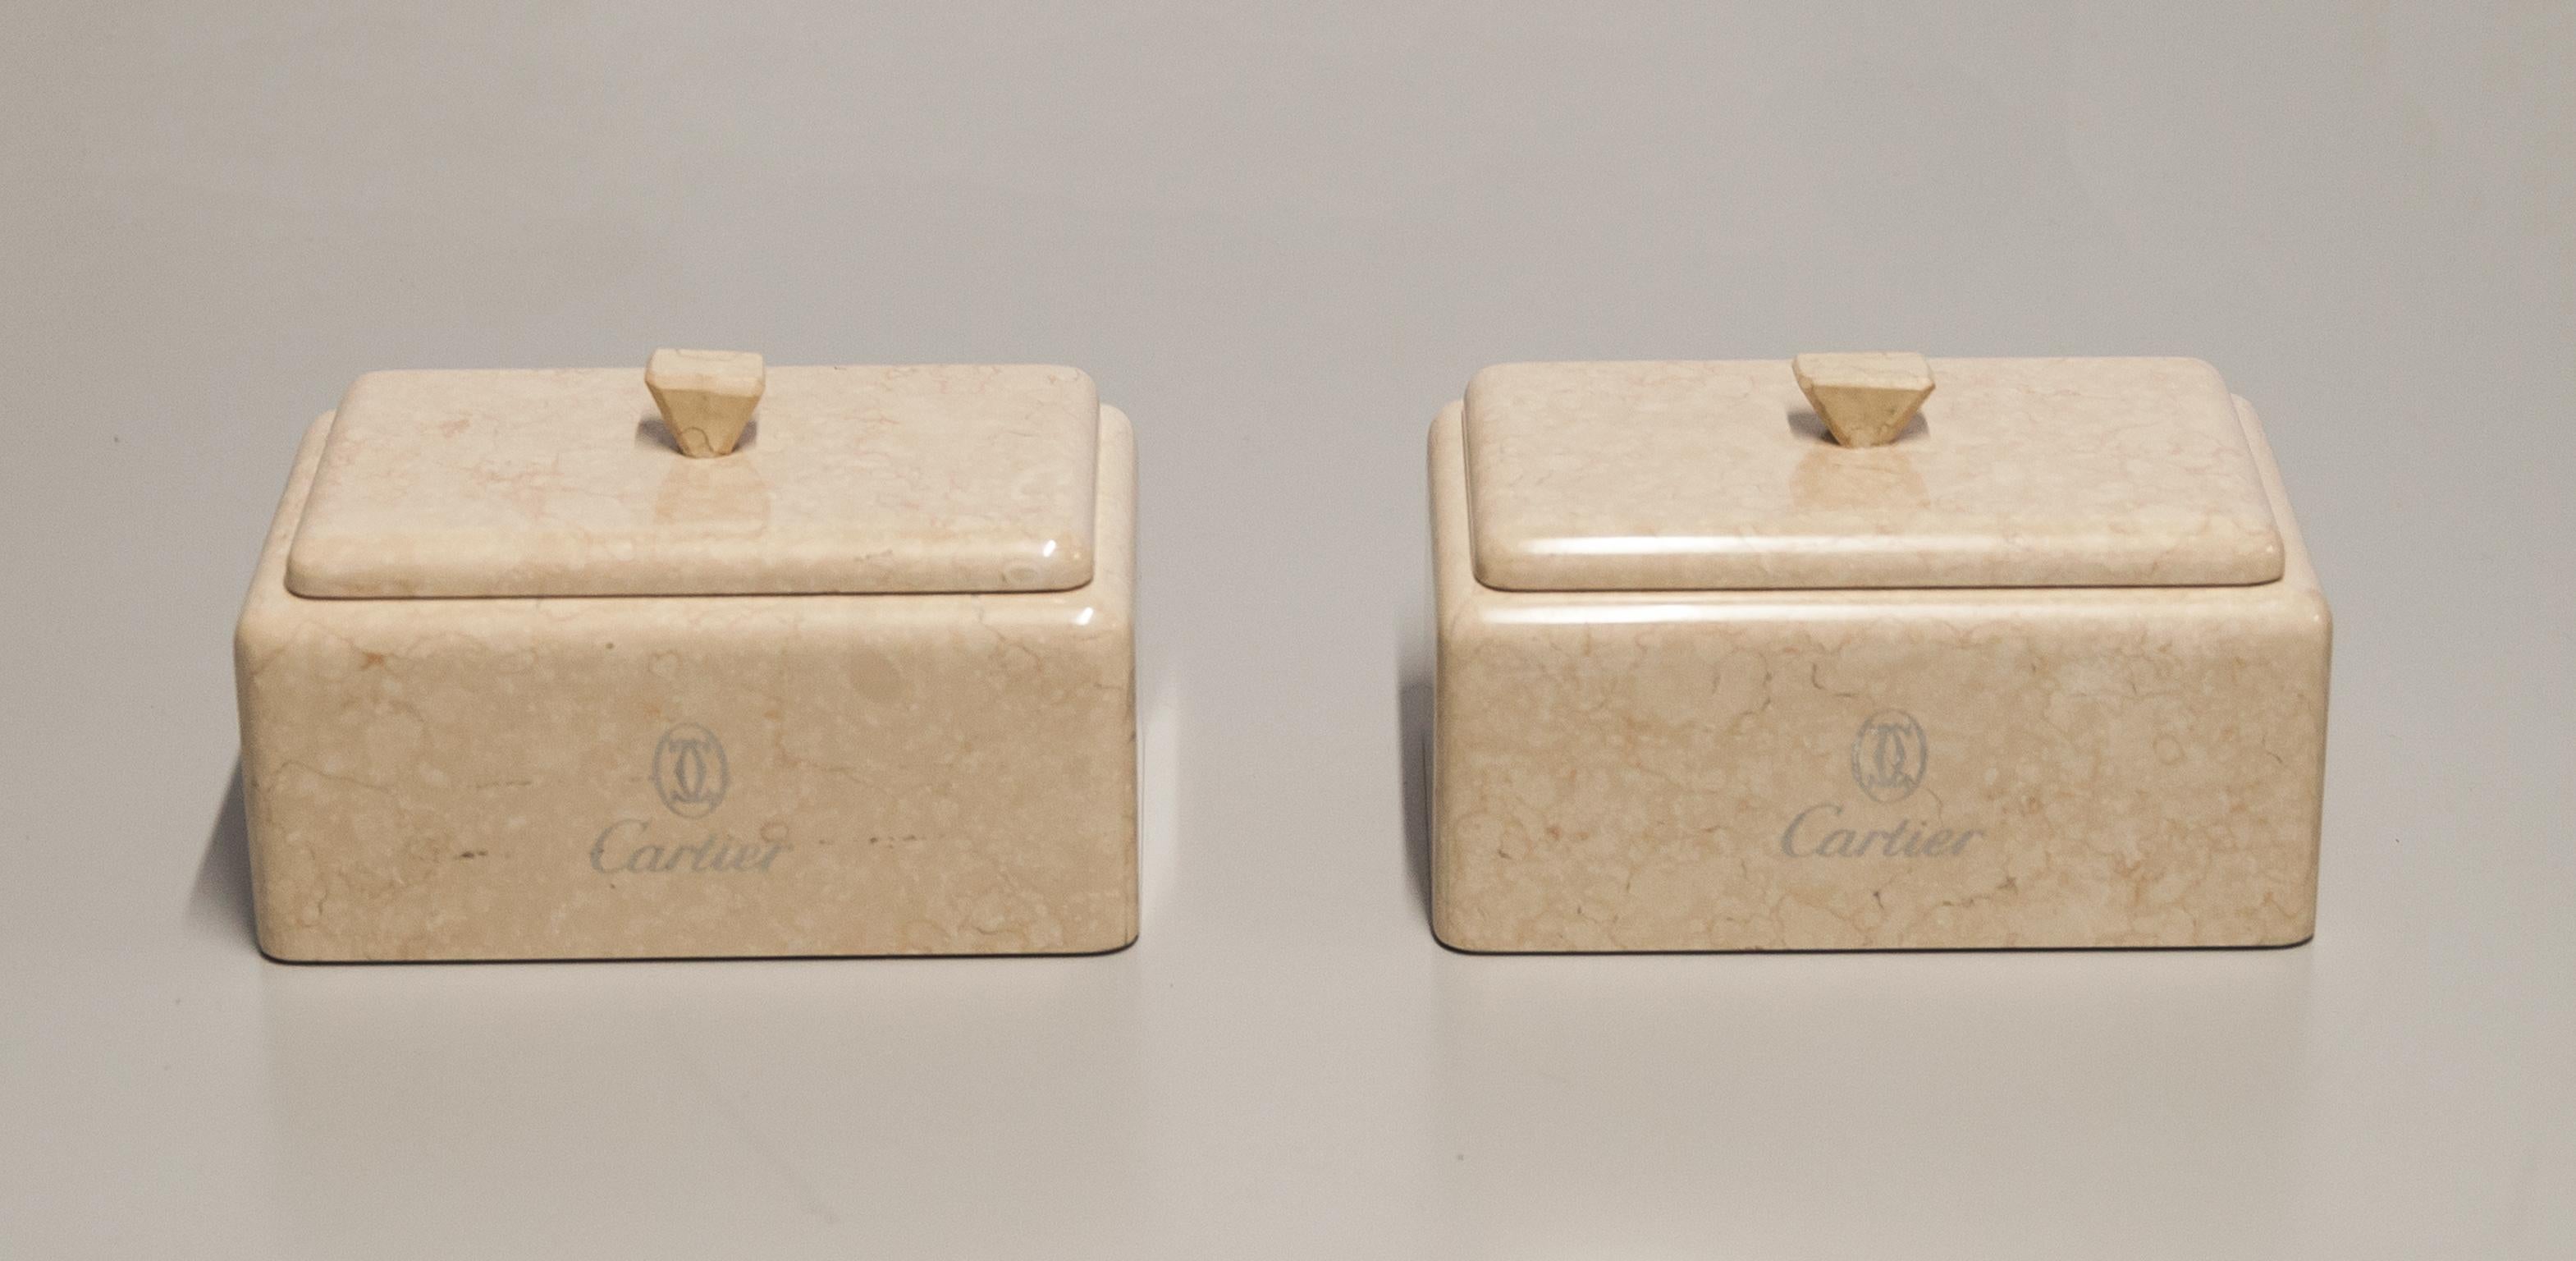 Elégantes boîtes en marbre réalisées pour Cartier avec le Logo gravé en argent en excellent état.
